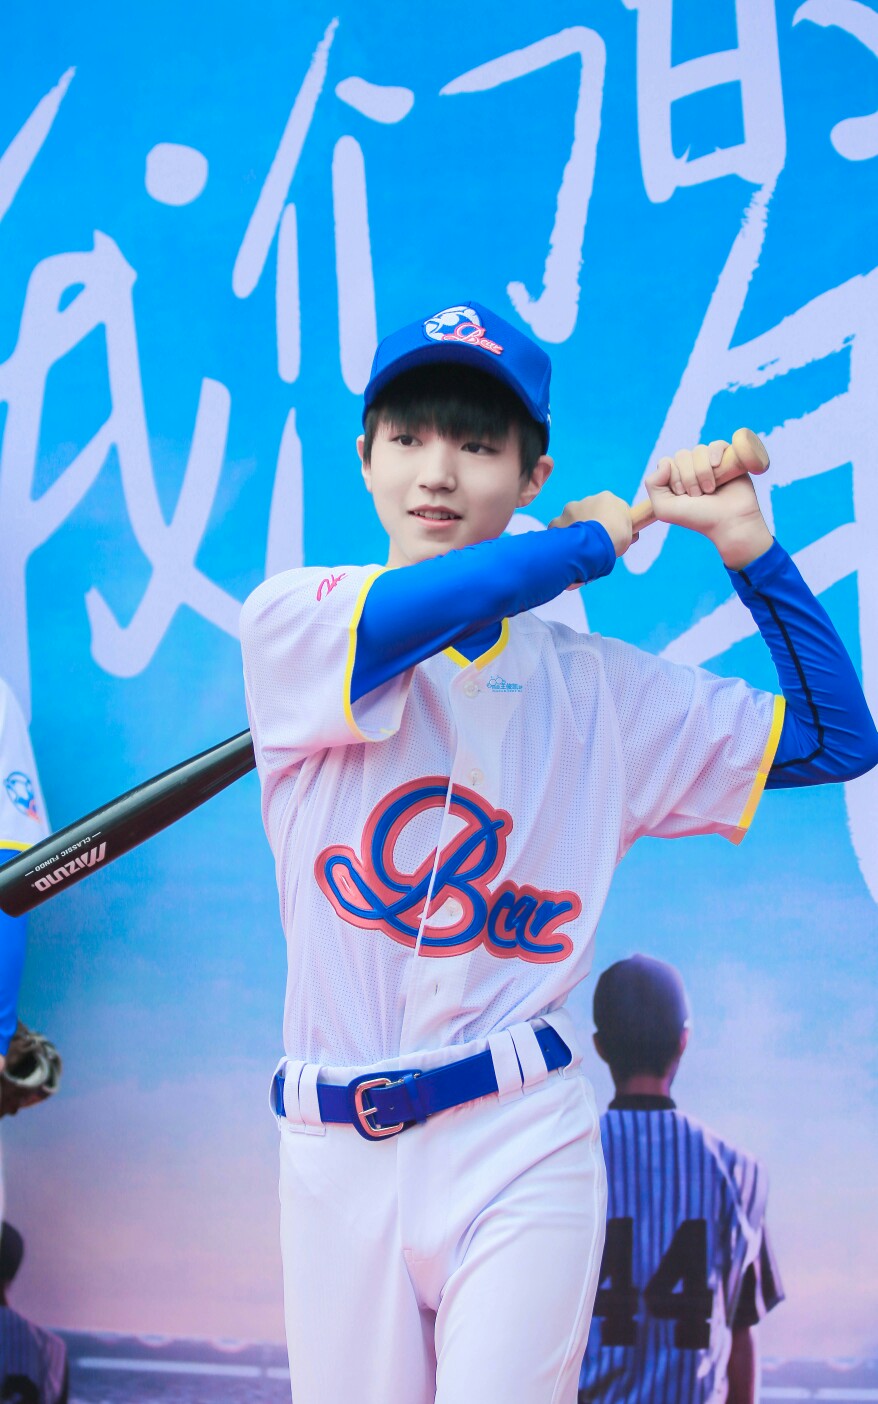 王俊凯 #tfboys 电视剧我们的少年时代 开机仪式 高清 棒球服 帅气